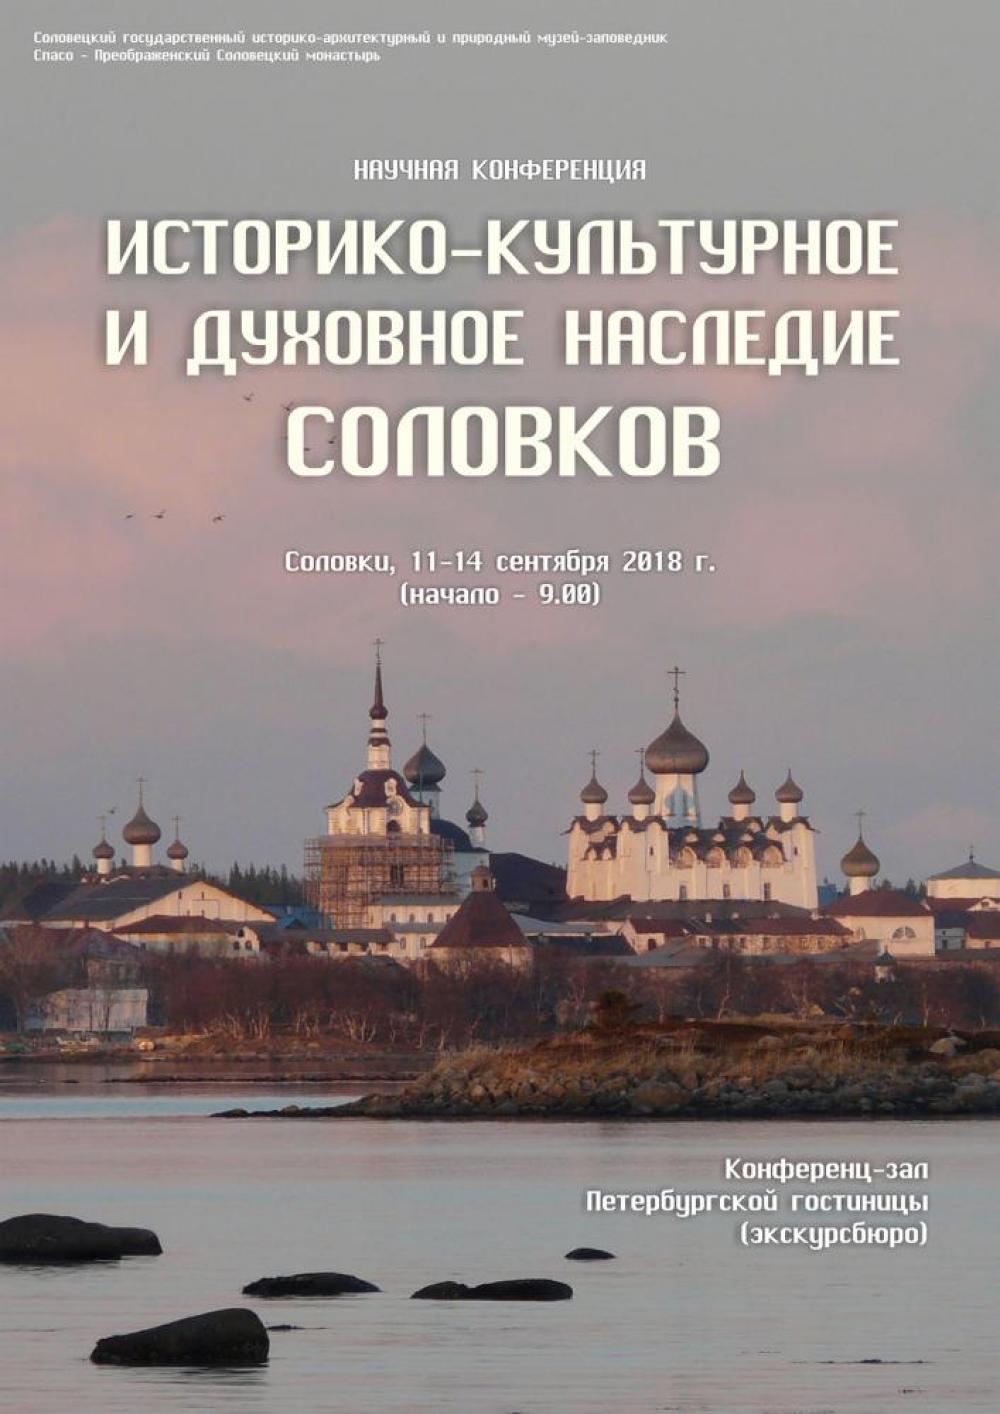 Афиша конференции «Историко-культурное и духовное наследие Соловков